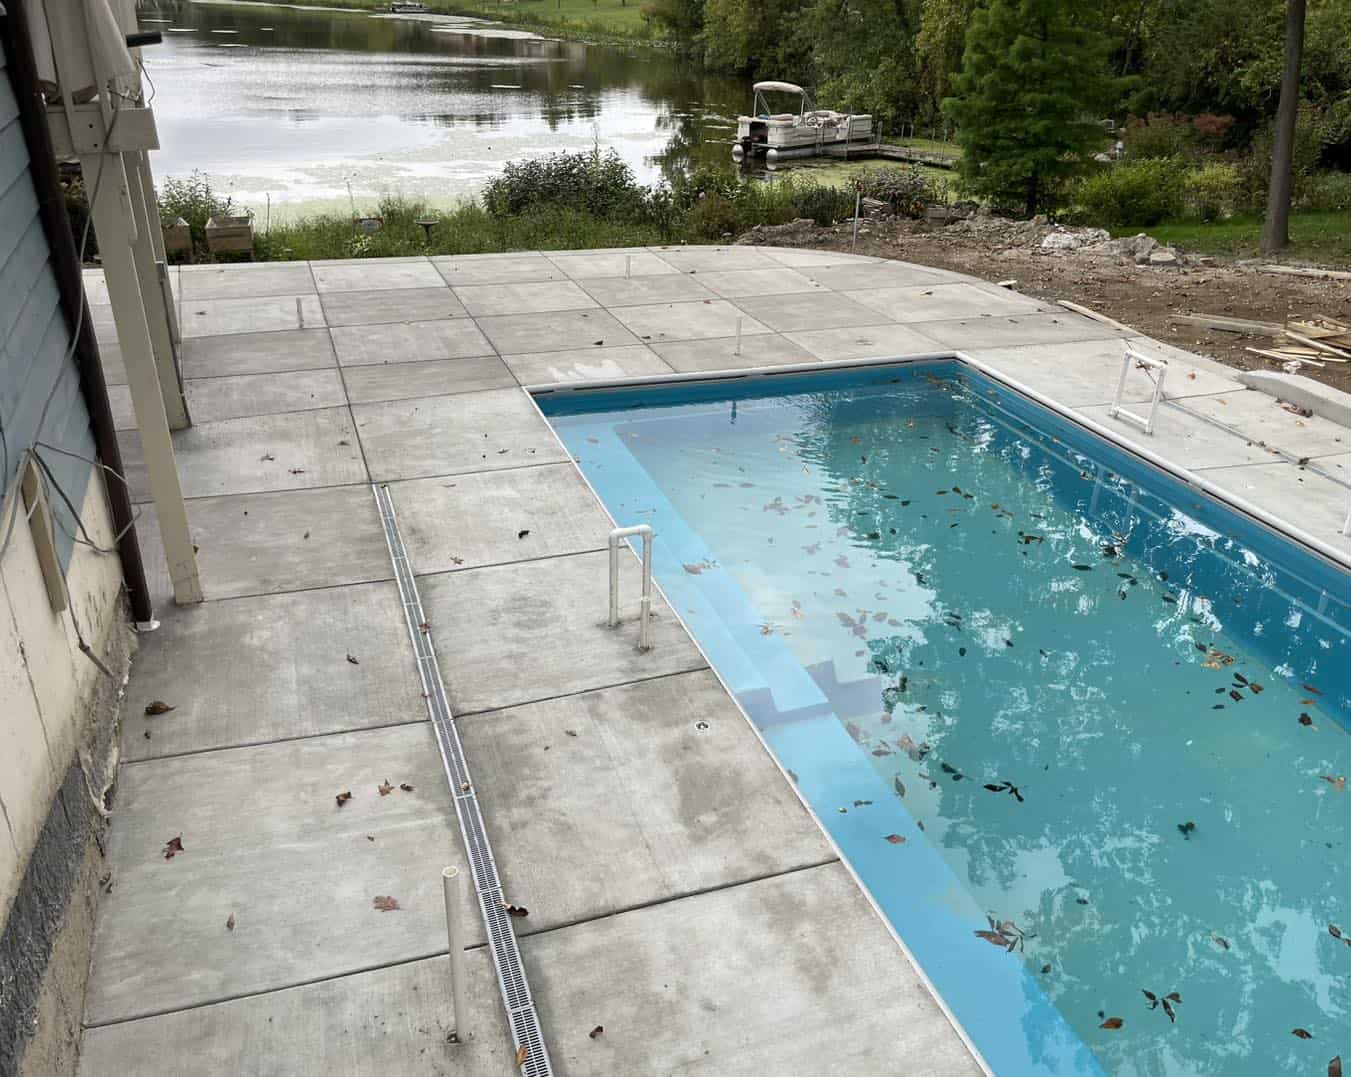 A concrete pool in a backyard next to a lake.